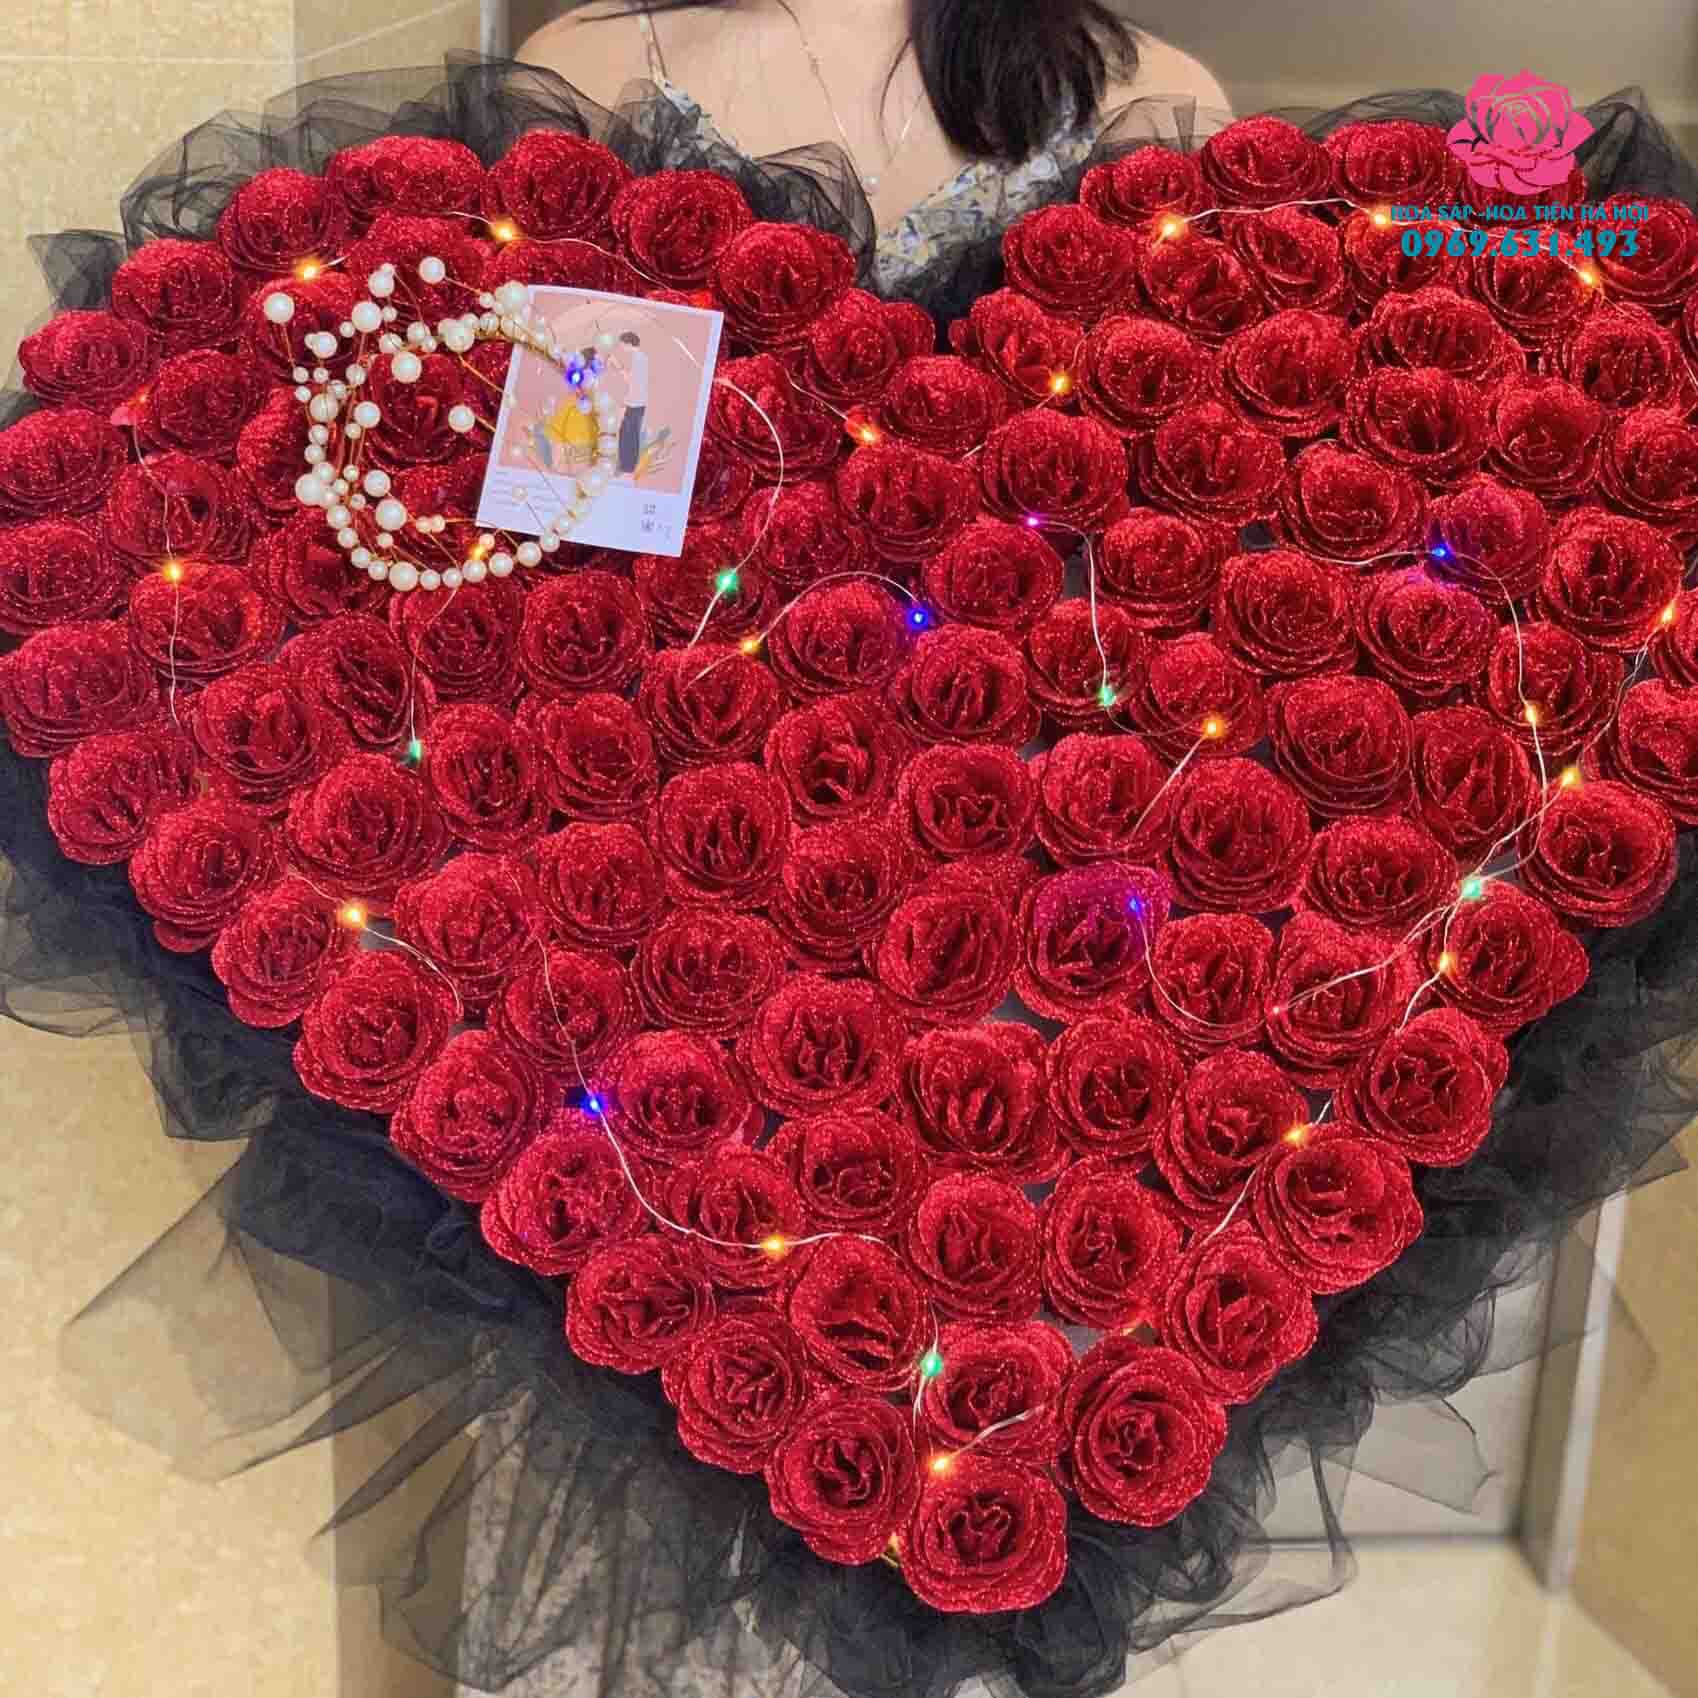 Cách cắm giỏ hoa hồng hình trái tim tặng nàng dịp Valentine